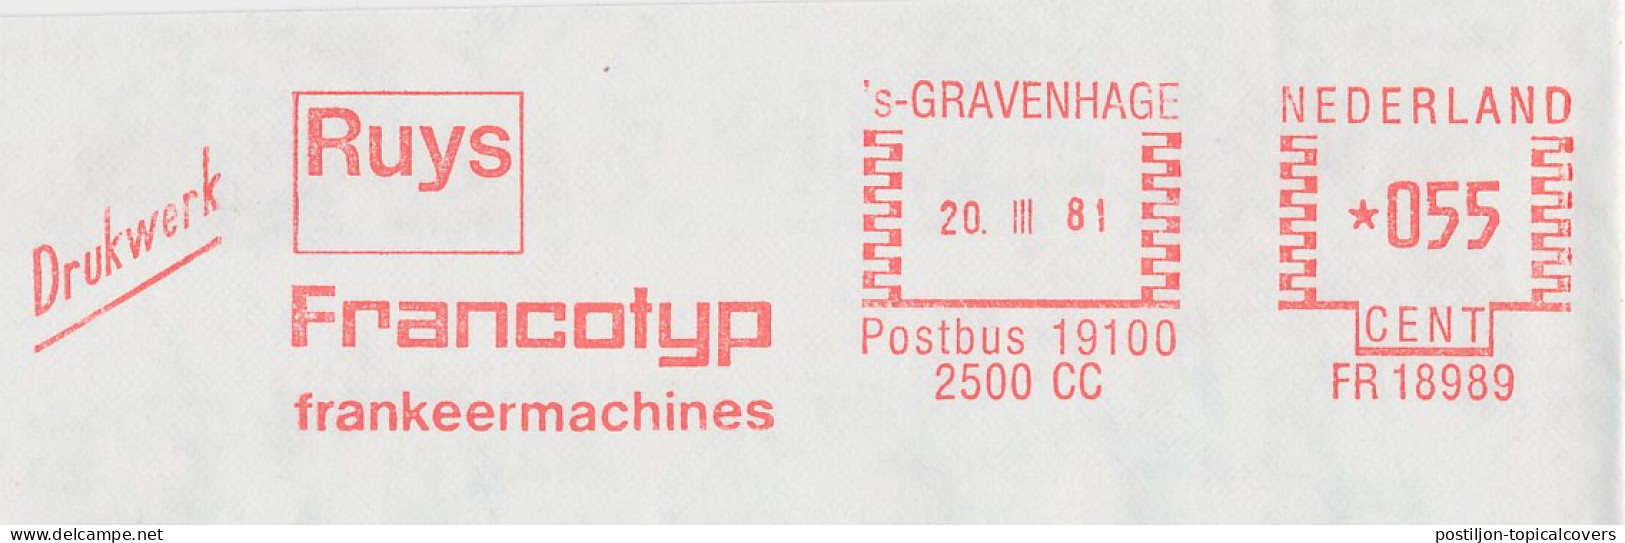 Meter Cover Netherlands 1981 Francotyp - The Hague - Vignette [ATM]